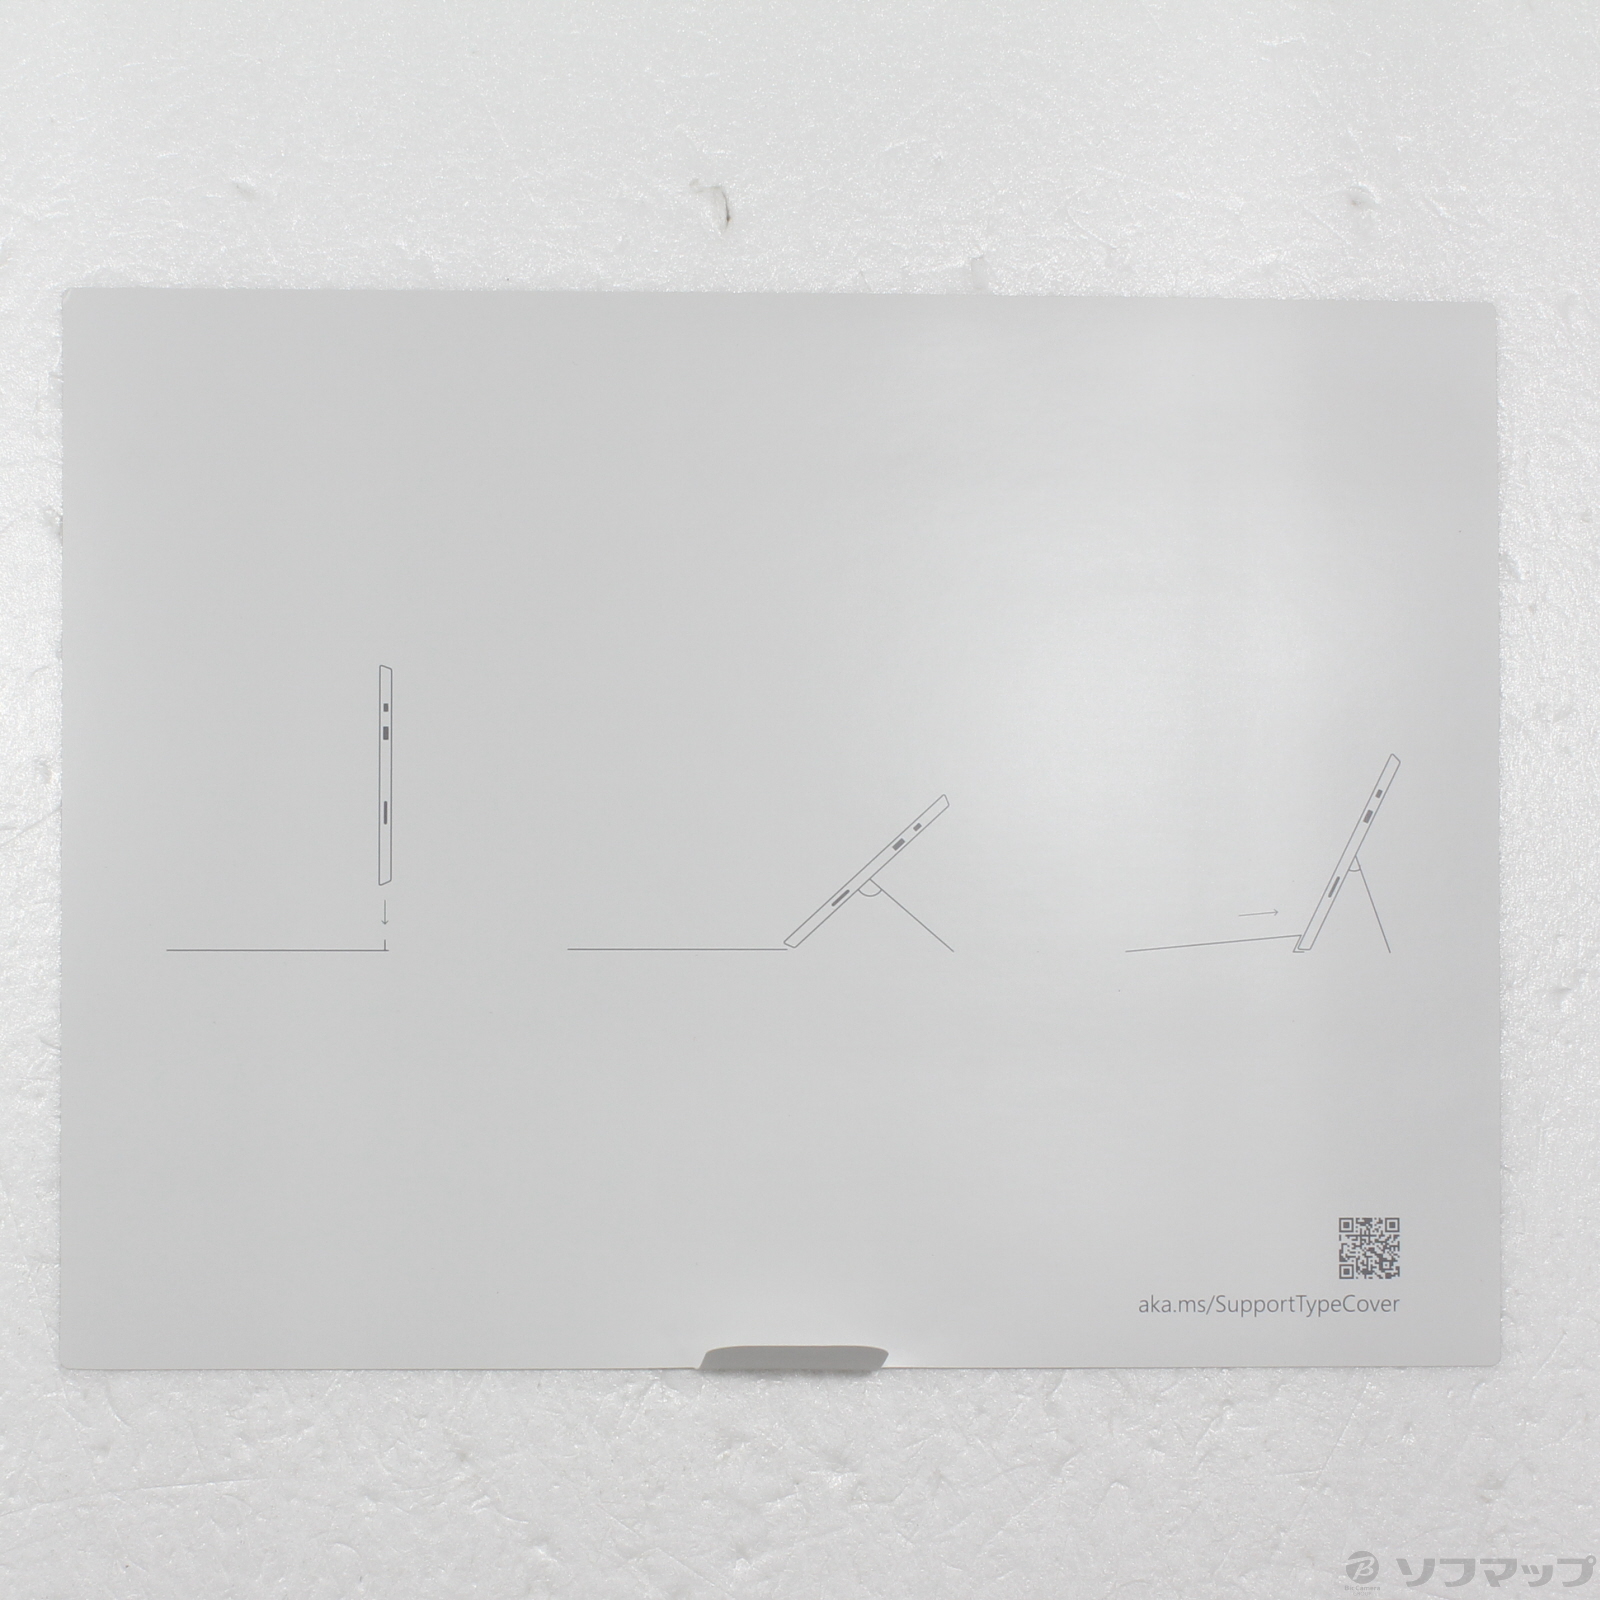 中古】〔展示品〕 Surface Pro Signature Type Cover FSY-00099 ポピー